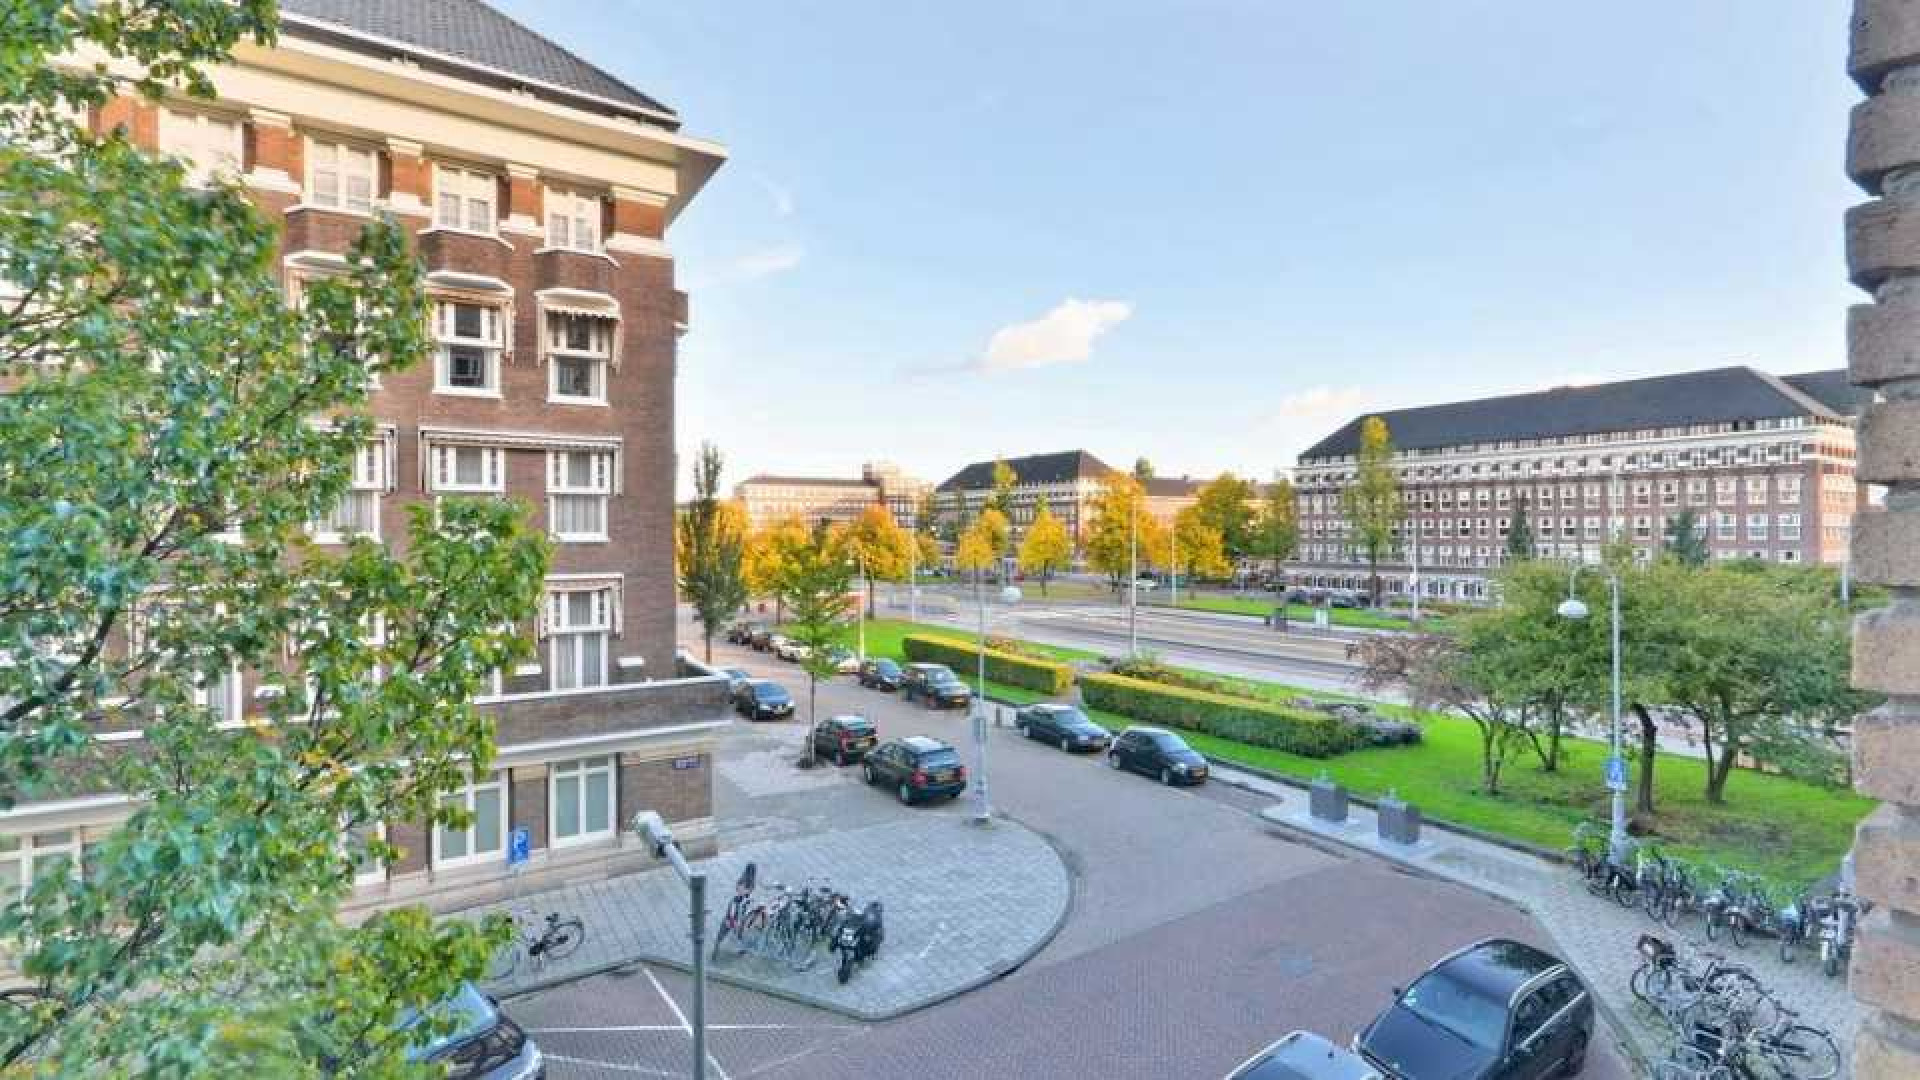 Chazia Mourali koopt met eigen geld luxe appartement in Amsterdam Zuid. Zie foto's 16